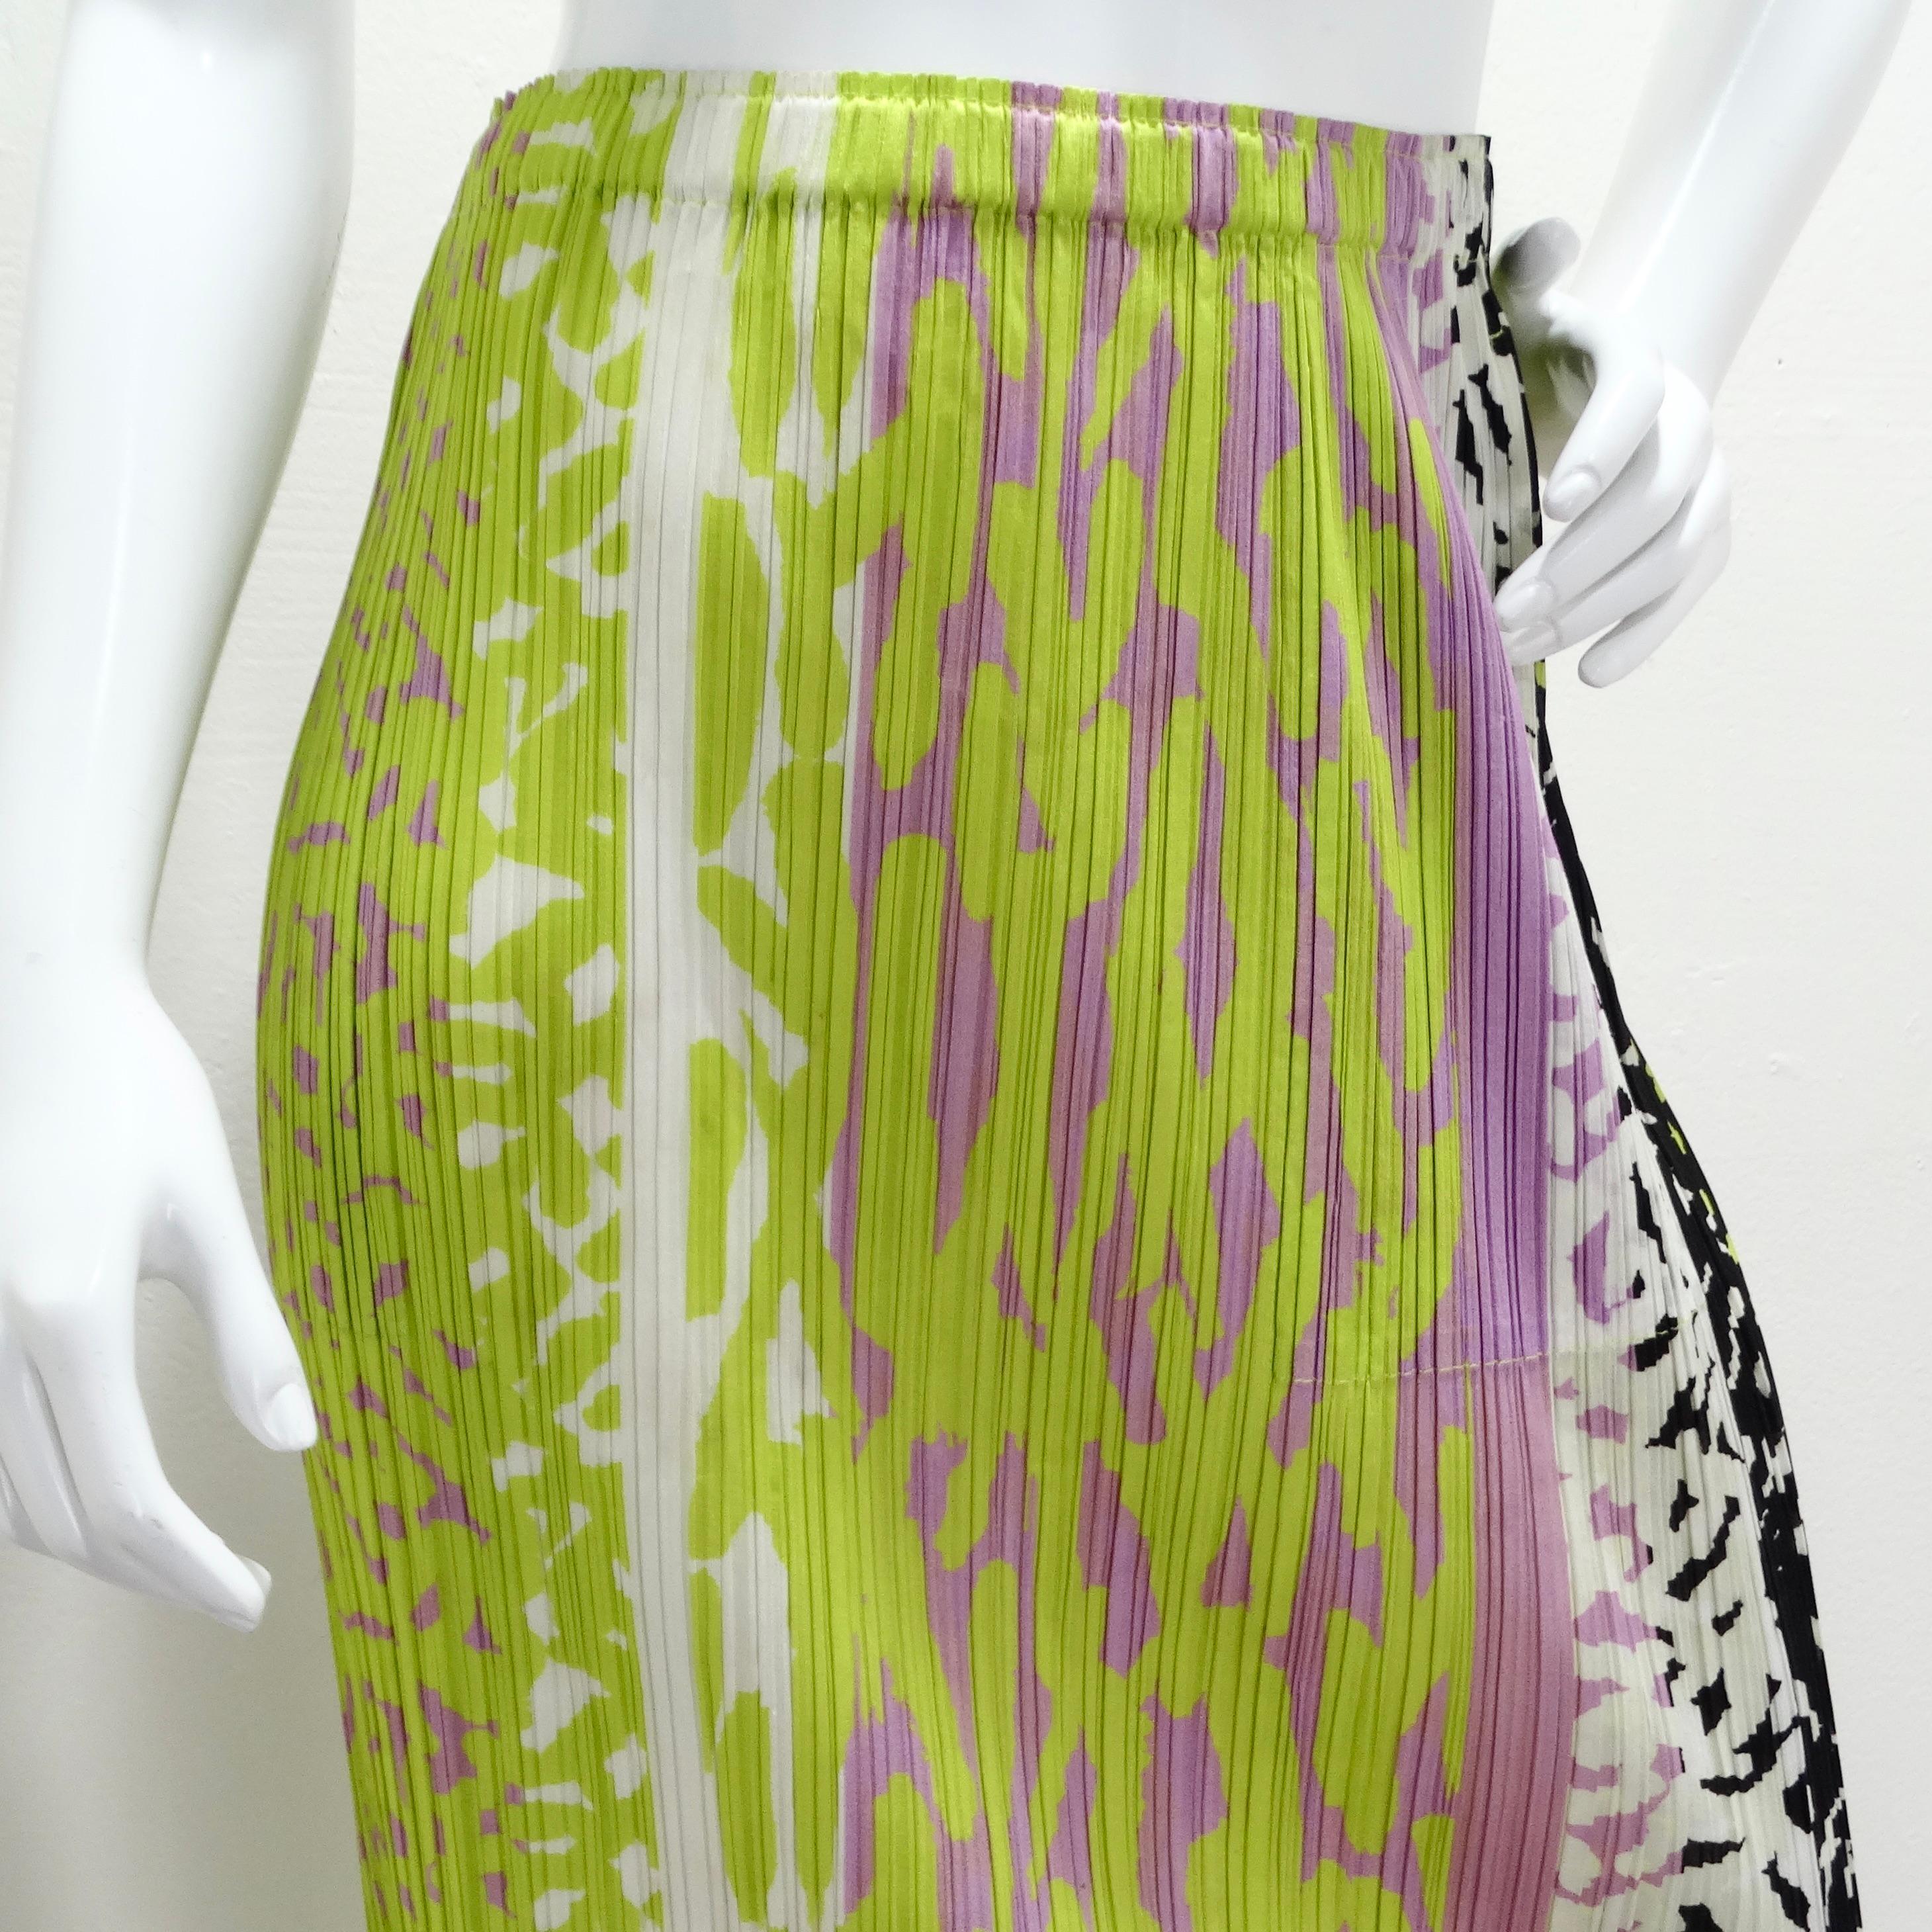 La jupe midi Issey Miyake 1990 Pleats Please Multicolor est une pièce vibrante et ludique qui met en valeur la technique de plissage signature du créateur. Cette jupe midi accrocheuse présente un motif patchwork vivant en violet, vert, noir et